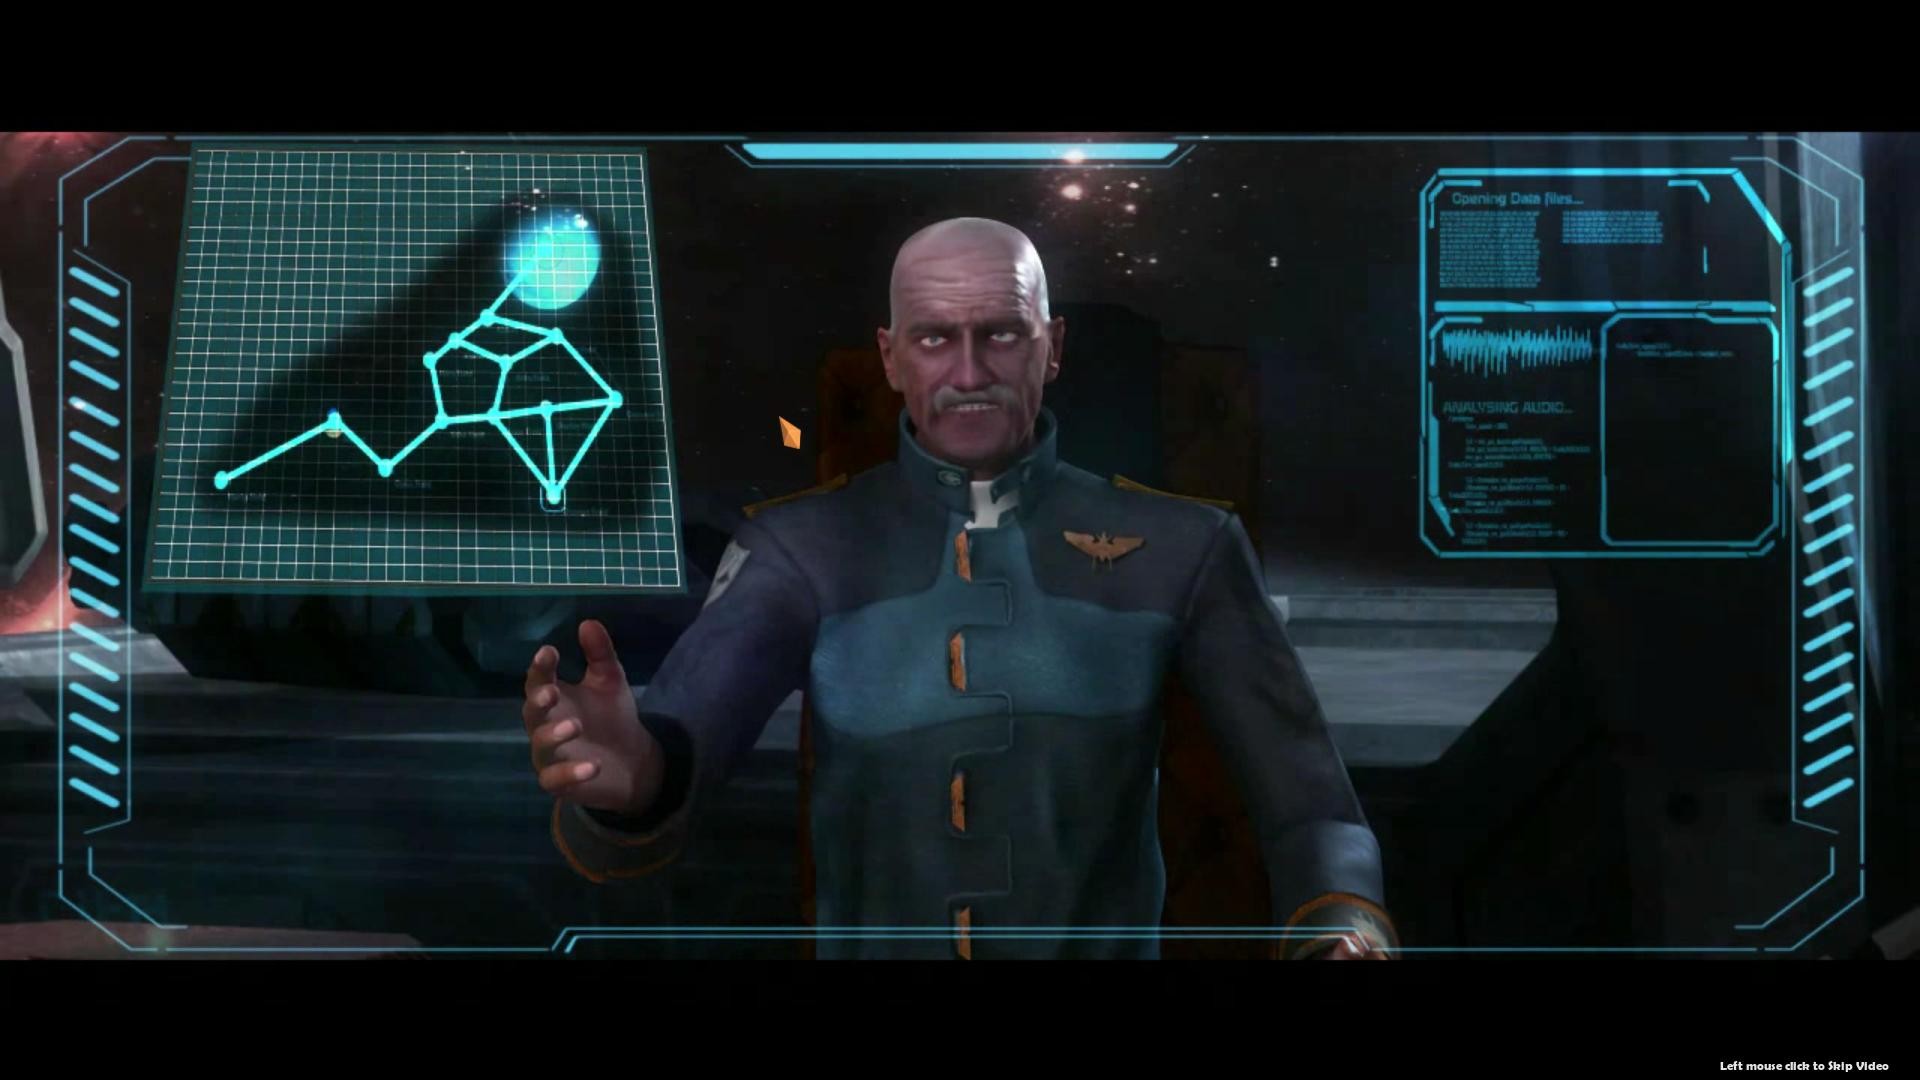 Gemini Wars screenshot